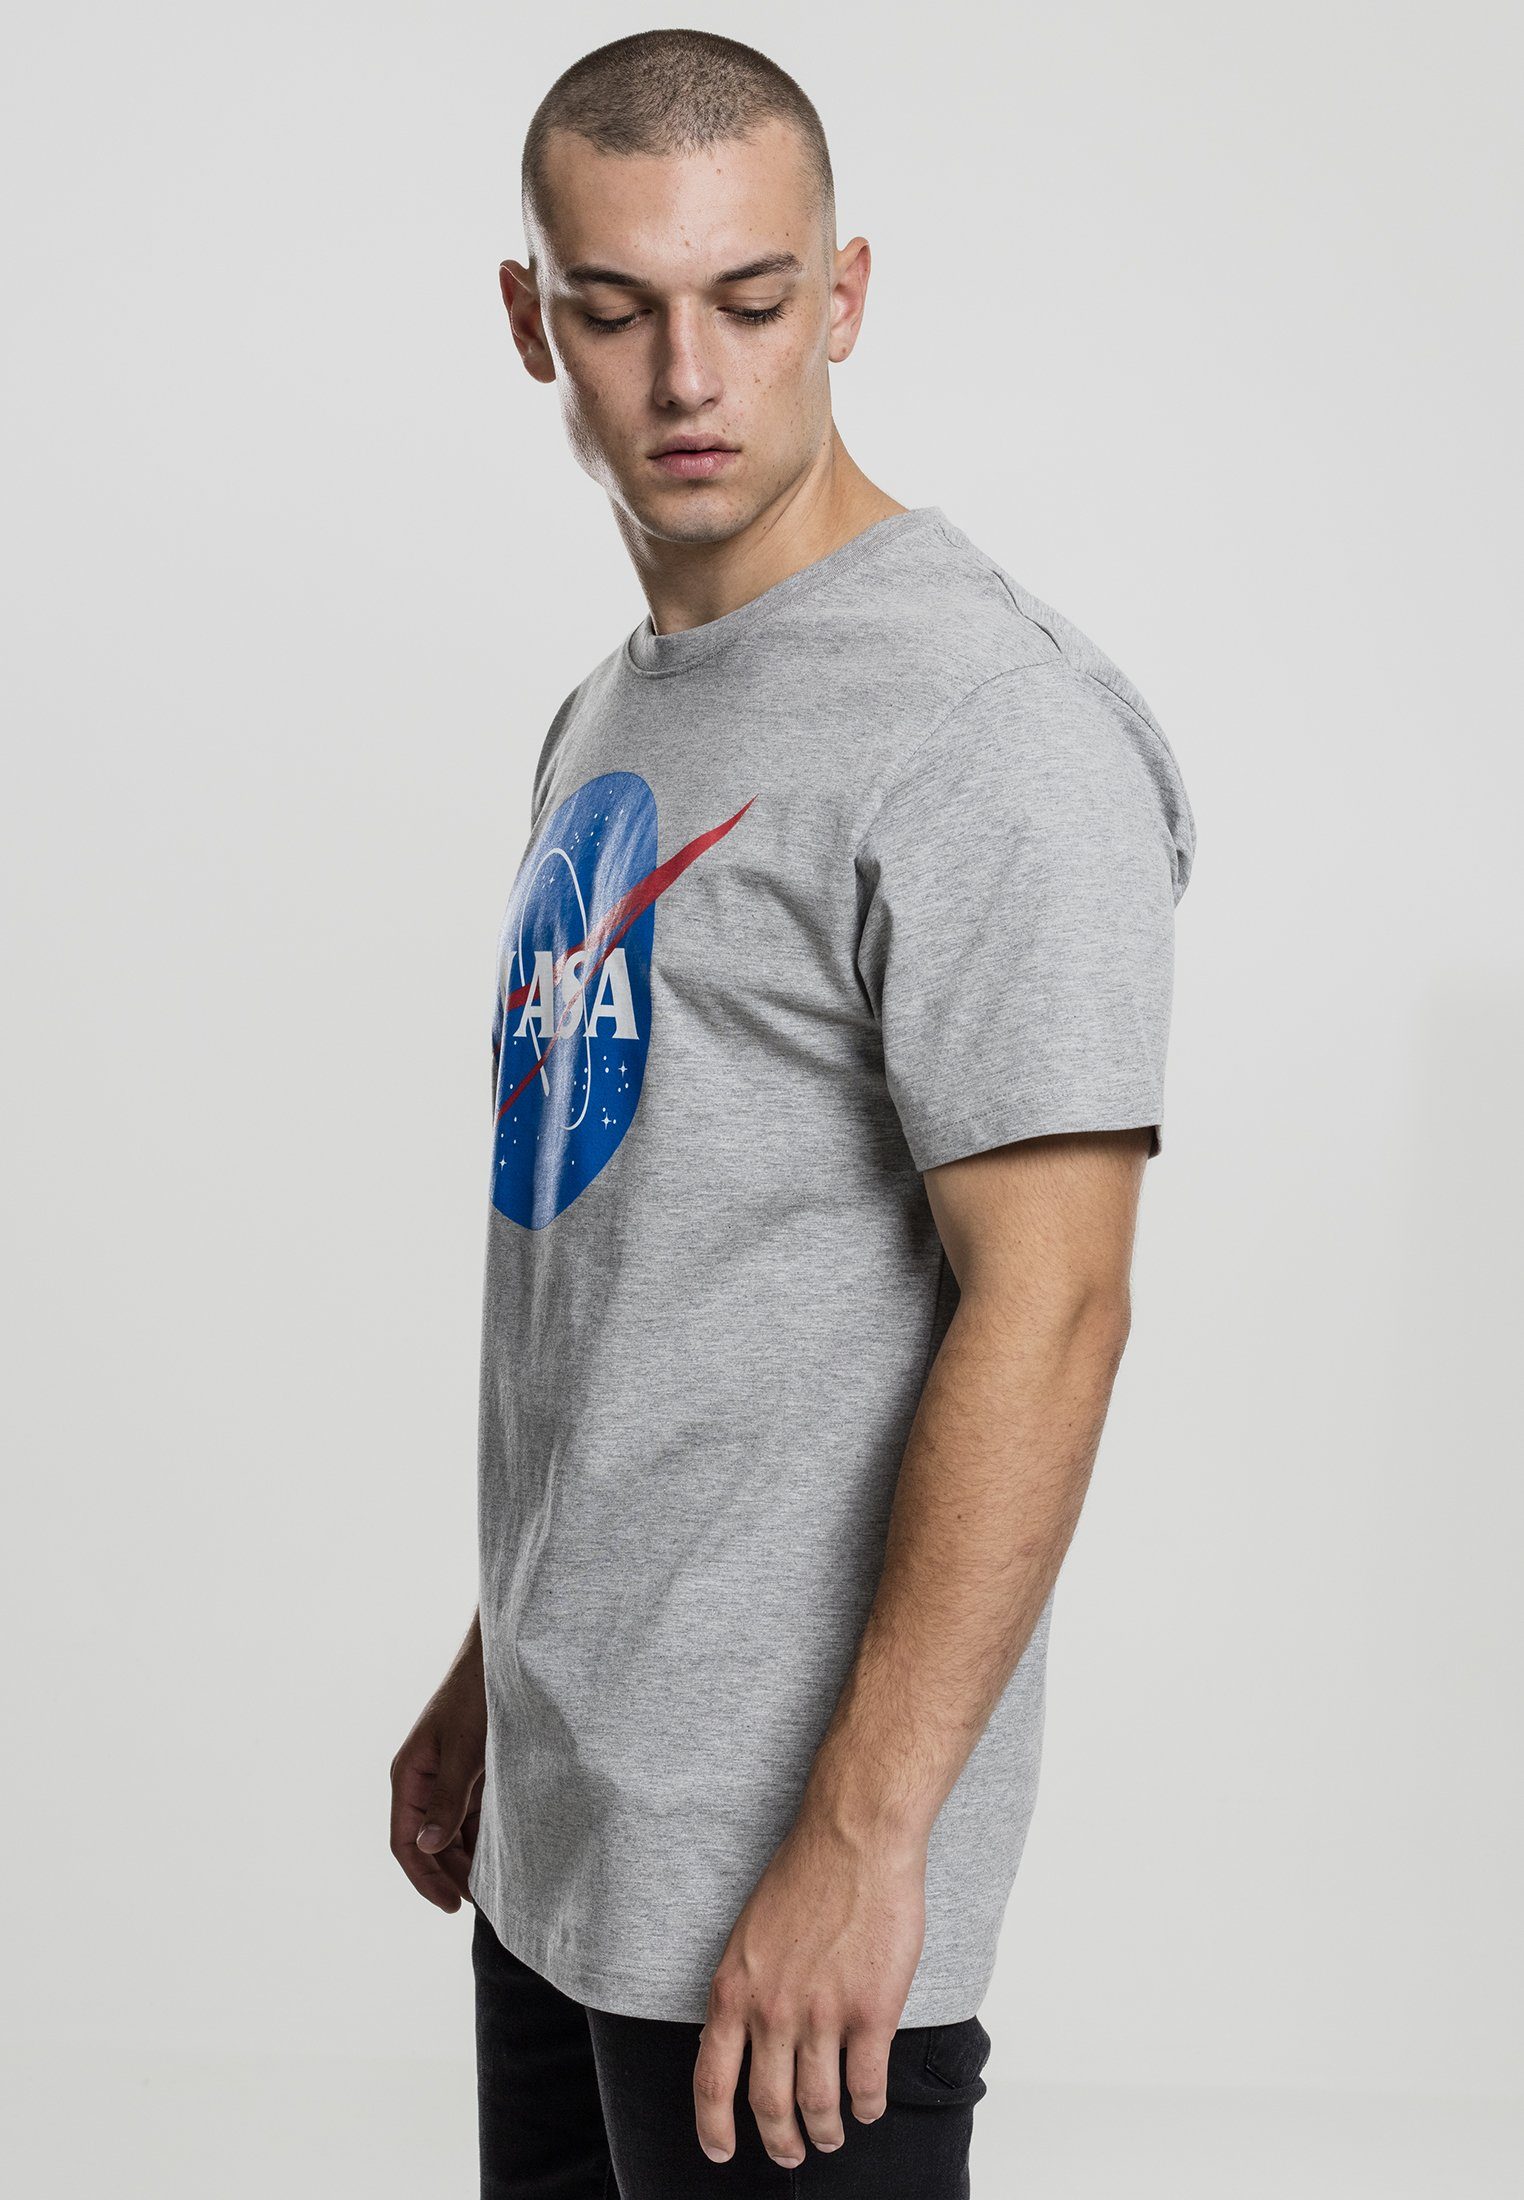 MisterTee T-Shirt (1-tlg) Herren NASA heathergrey Tee